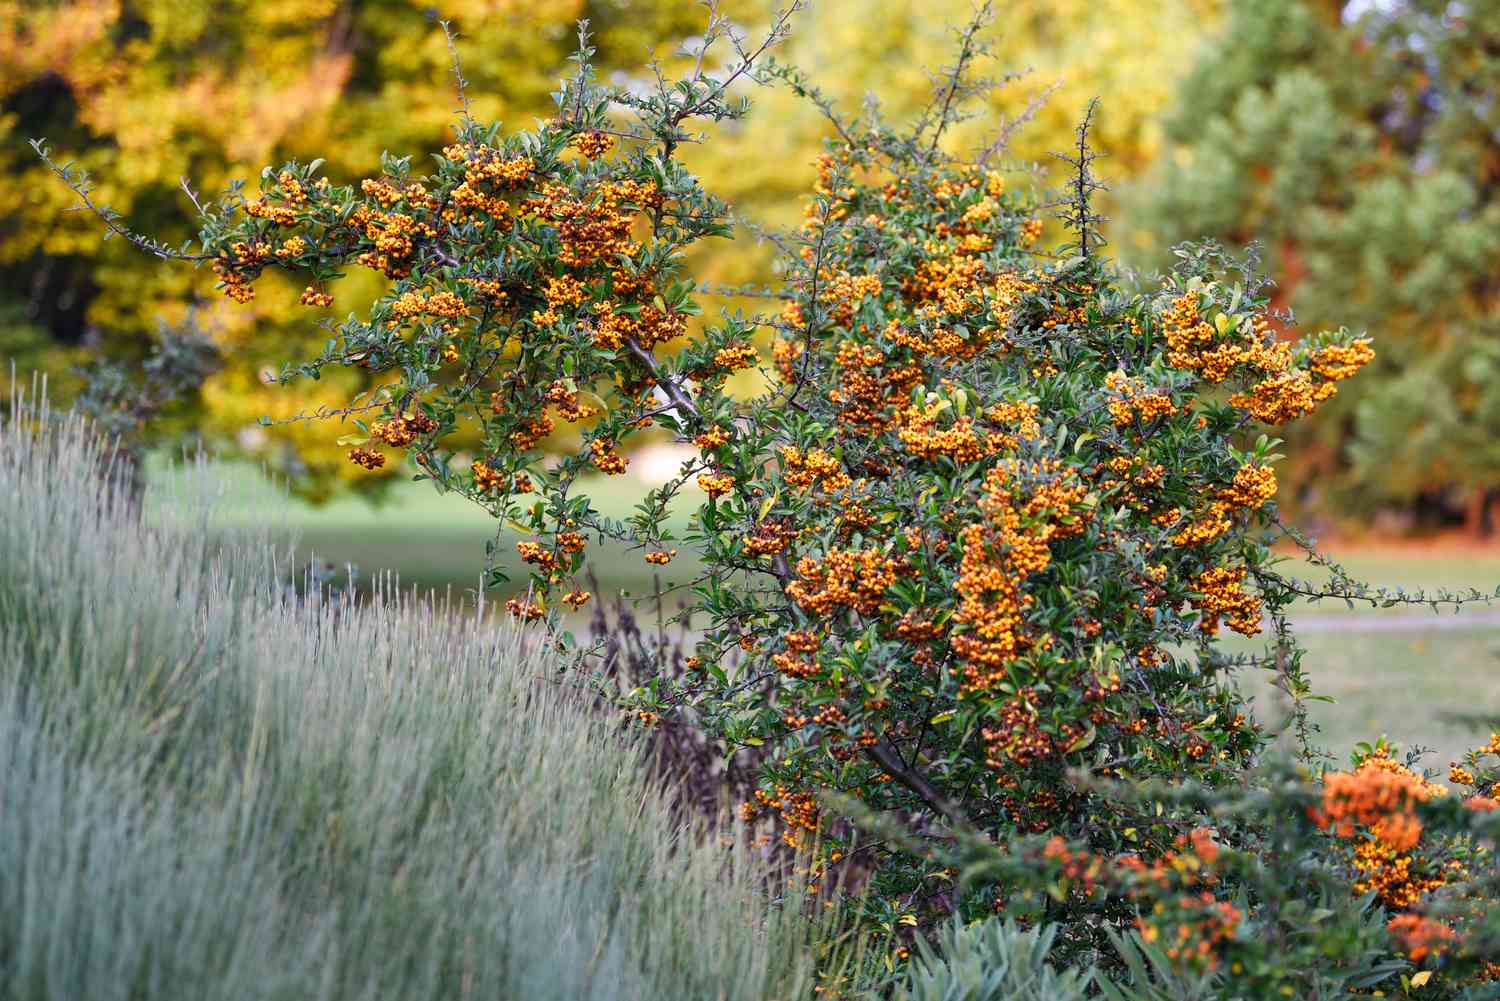 Arbuste d'épine-vinette avec des grappes de baies orange-doré sur les branches